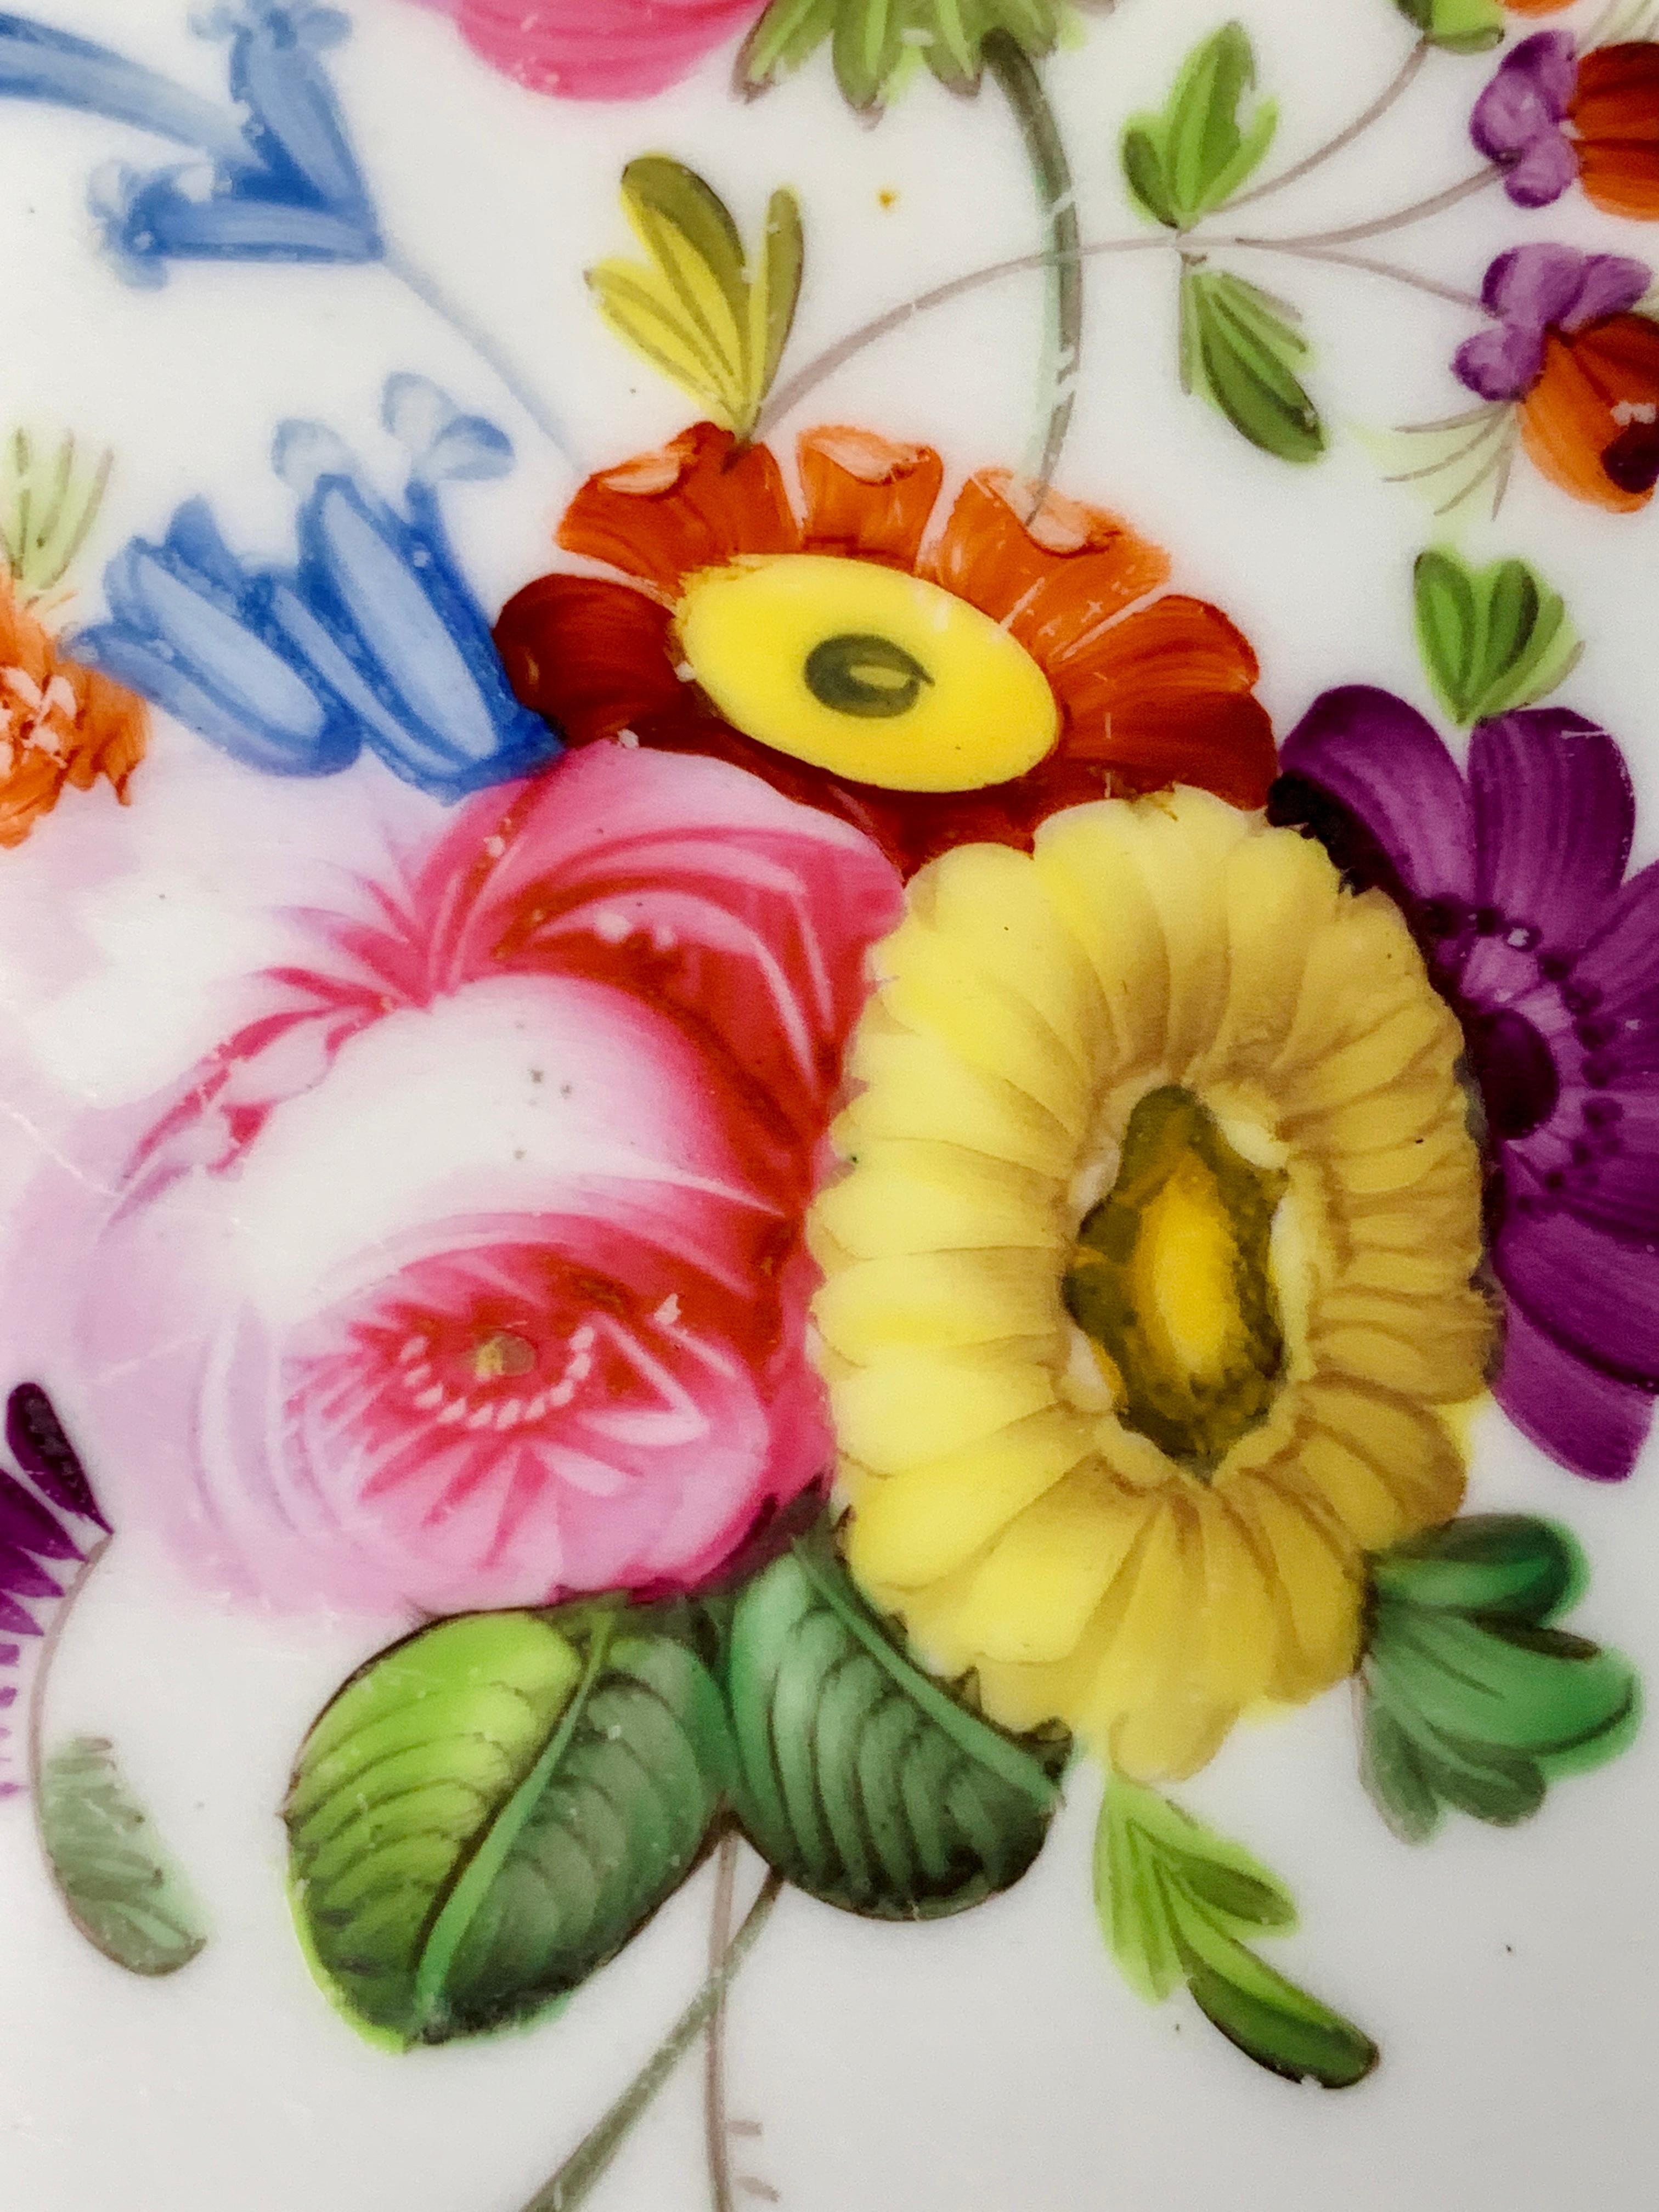 Dieser Satz von fünf Tellern aus Coalport-Porzellan wurde um 1830 in England hergestellt. 
In der Mitte eines jeden ist ein Bouquet aus exquisiten, handgemalten Blumen. 
Die Nahaufnahmen zeigen die außergewöhnliche Blumenmalerei.
Ein breiter